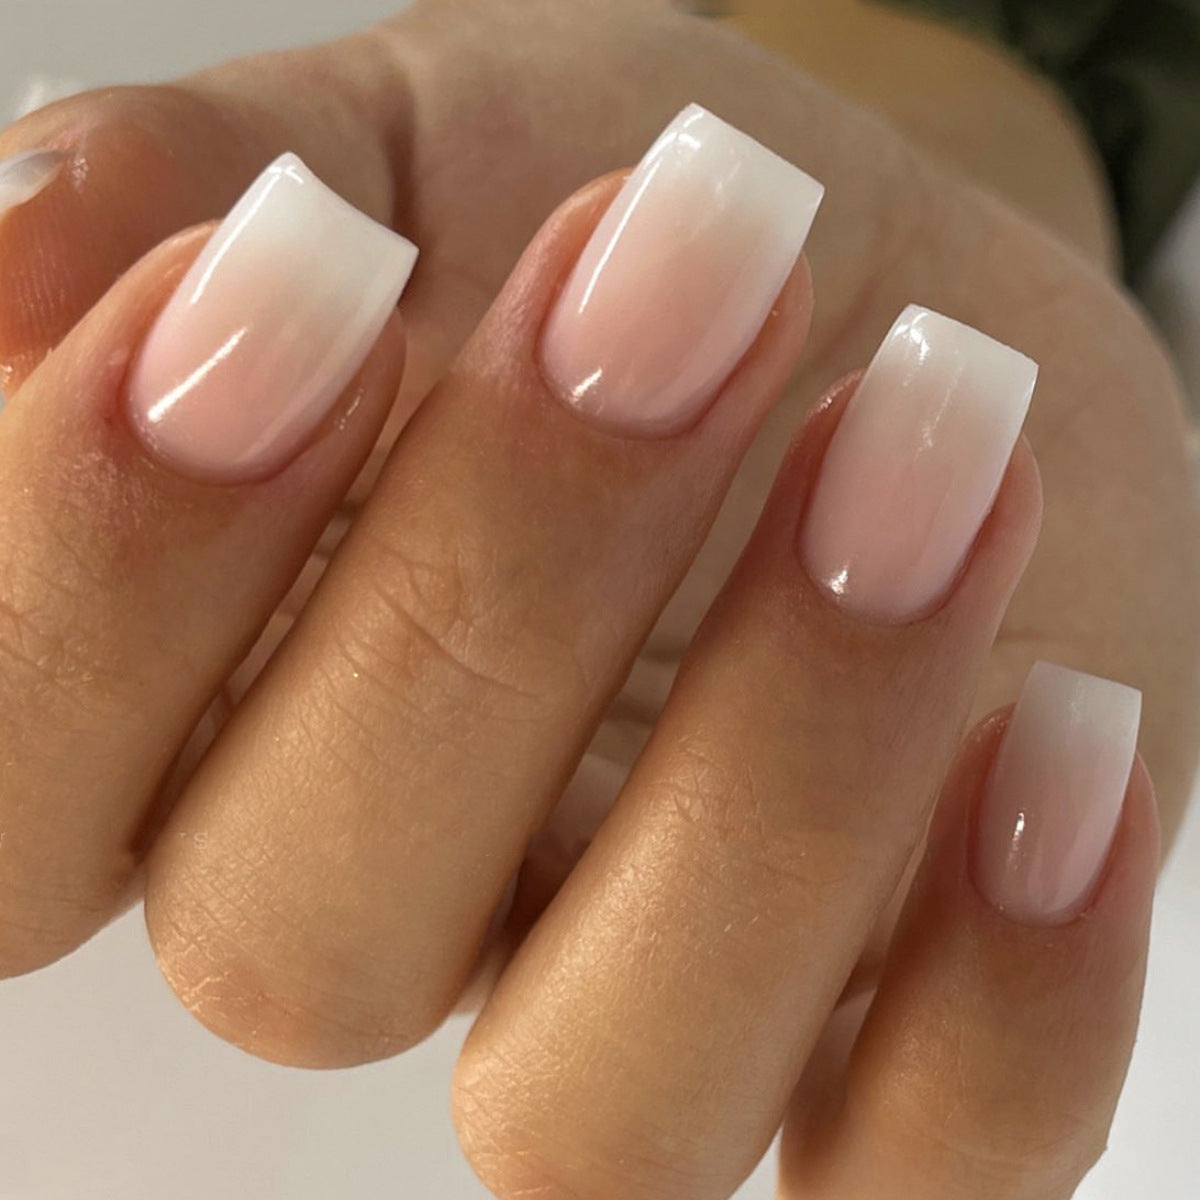 Natural set short acrylic nails🌻 - Vita Nails & Beauty | Facebook